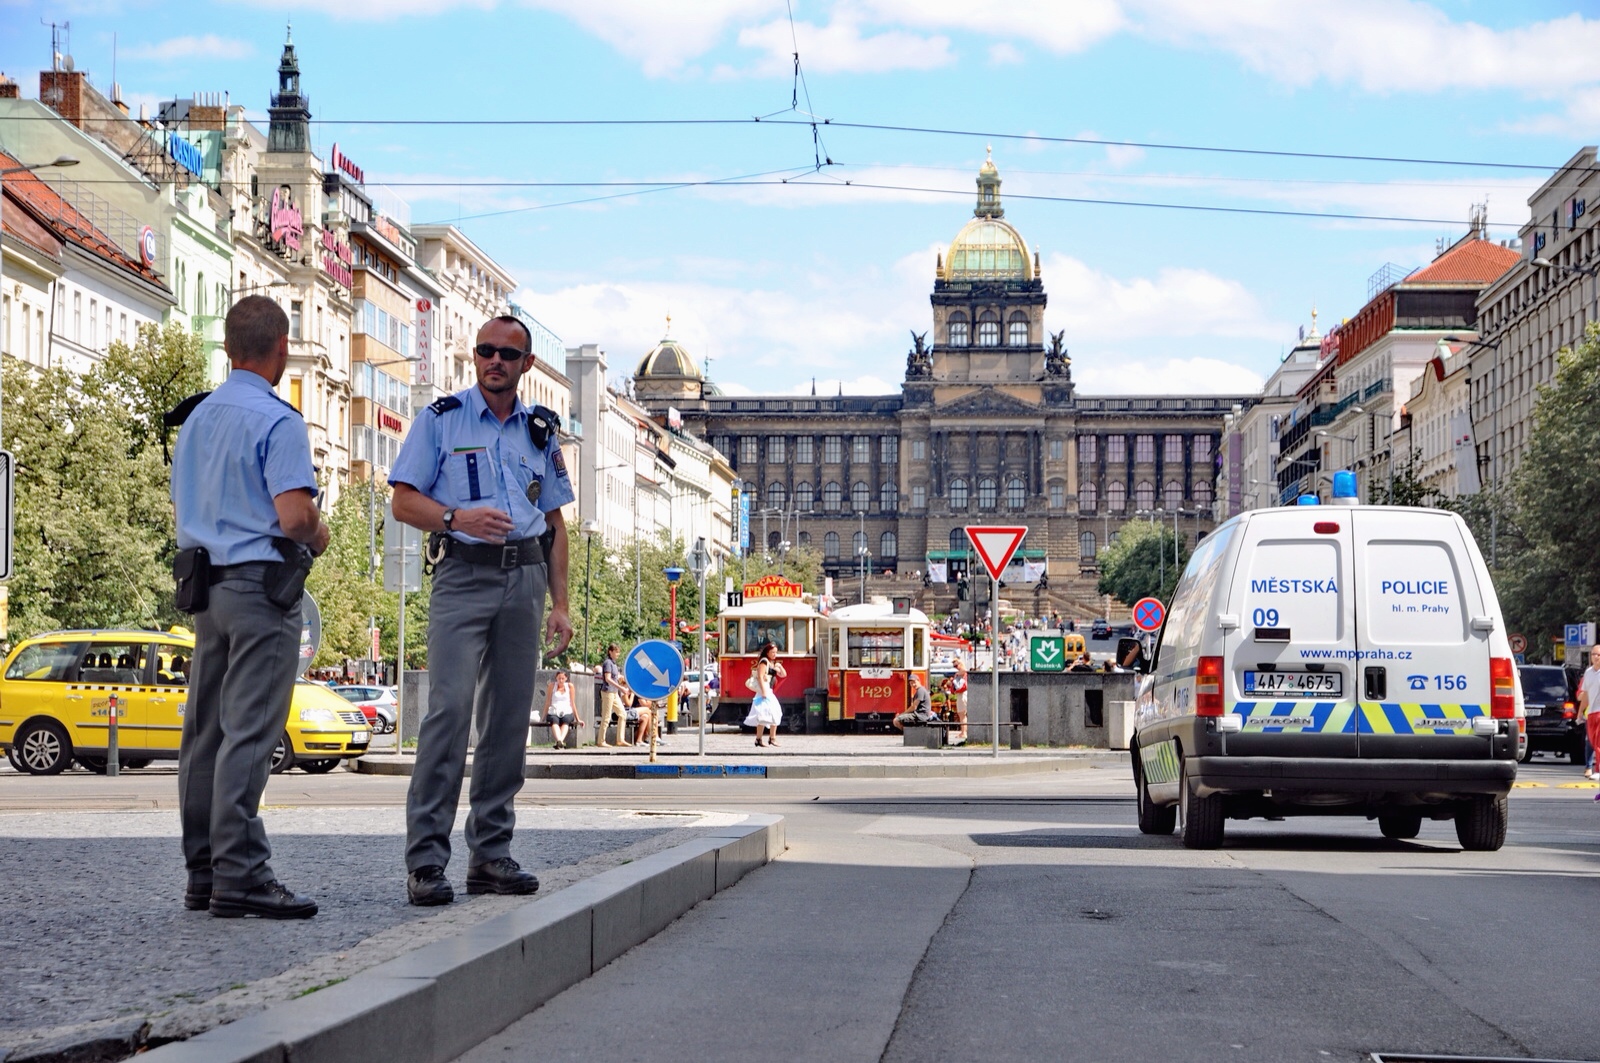 Počet trestných činů spáchaných na území Prahy klesá